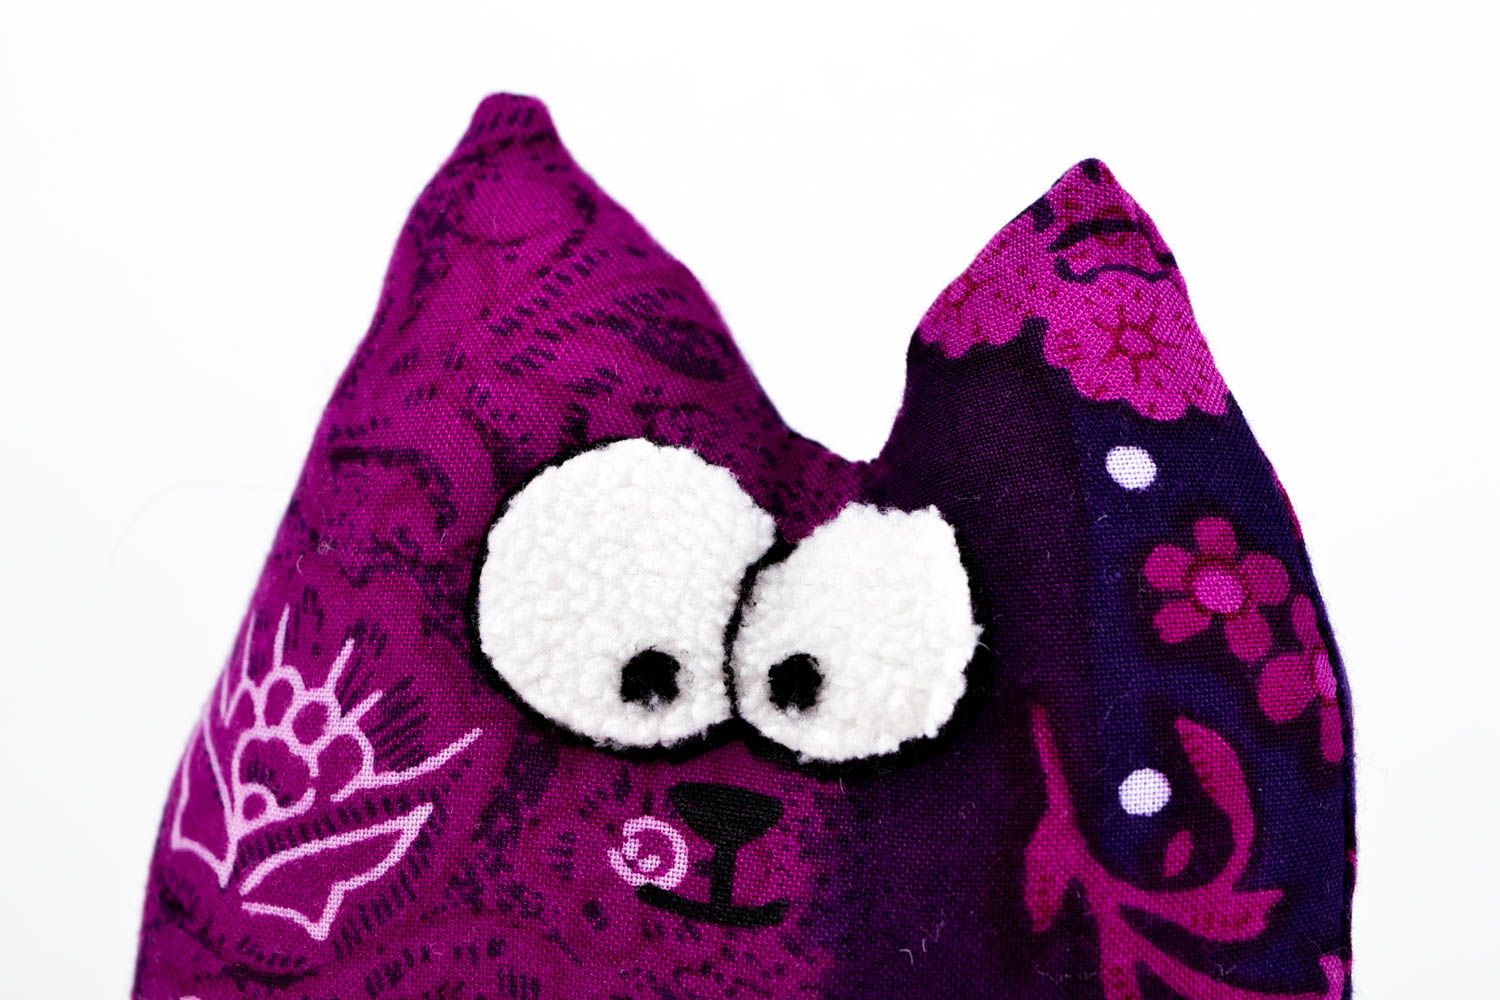 Spielzeug aus Stoff handmade Katze Kuscheltier violett Plüschtier Katze toll foto 3